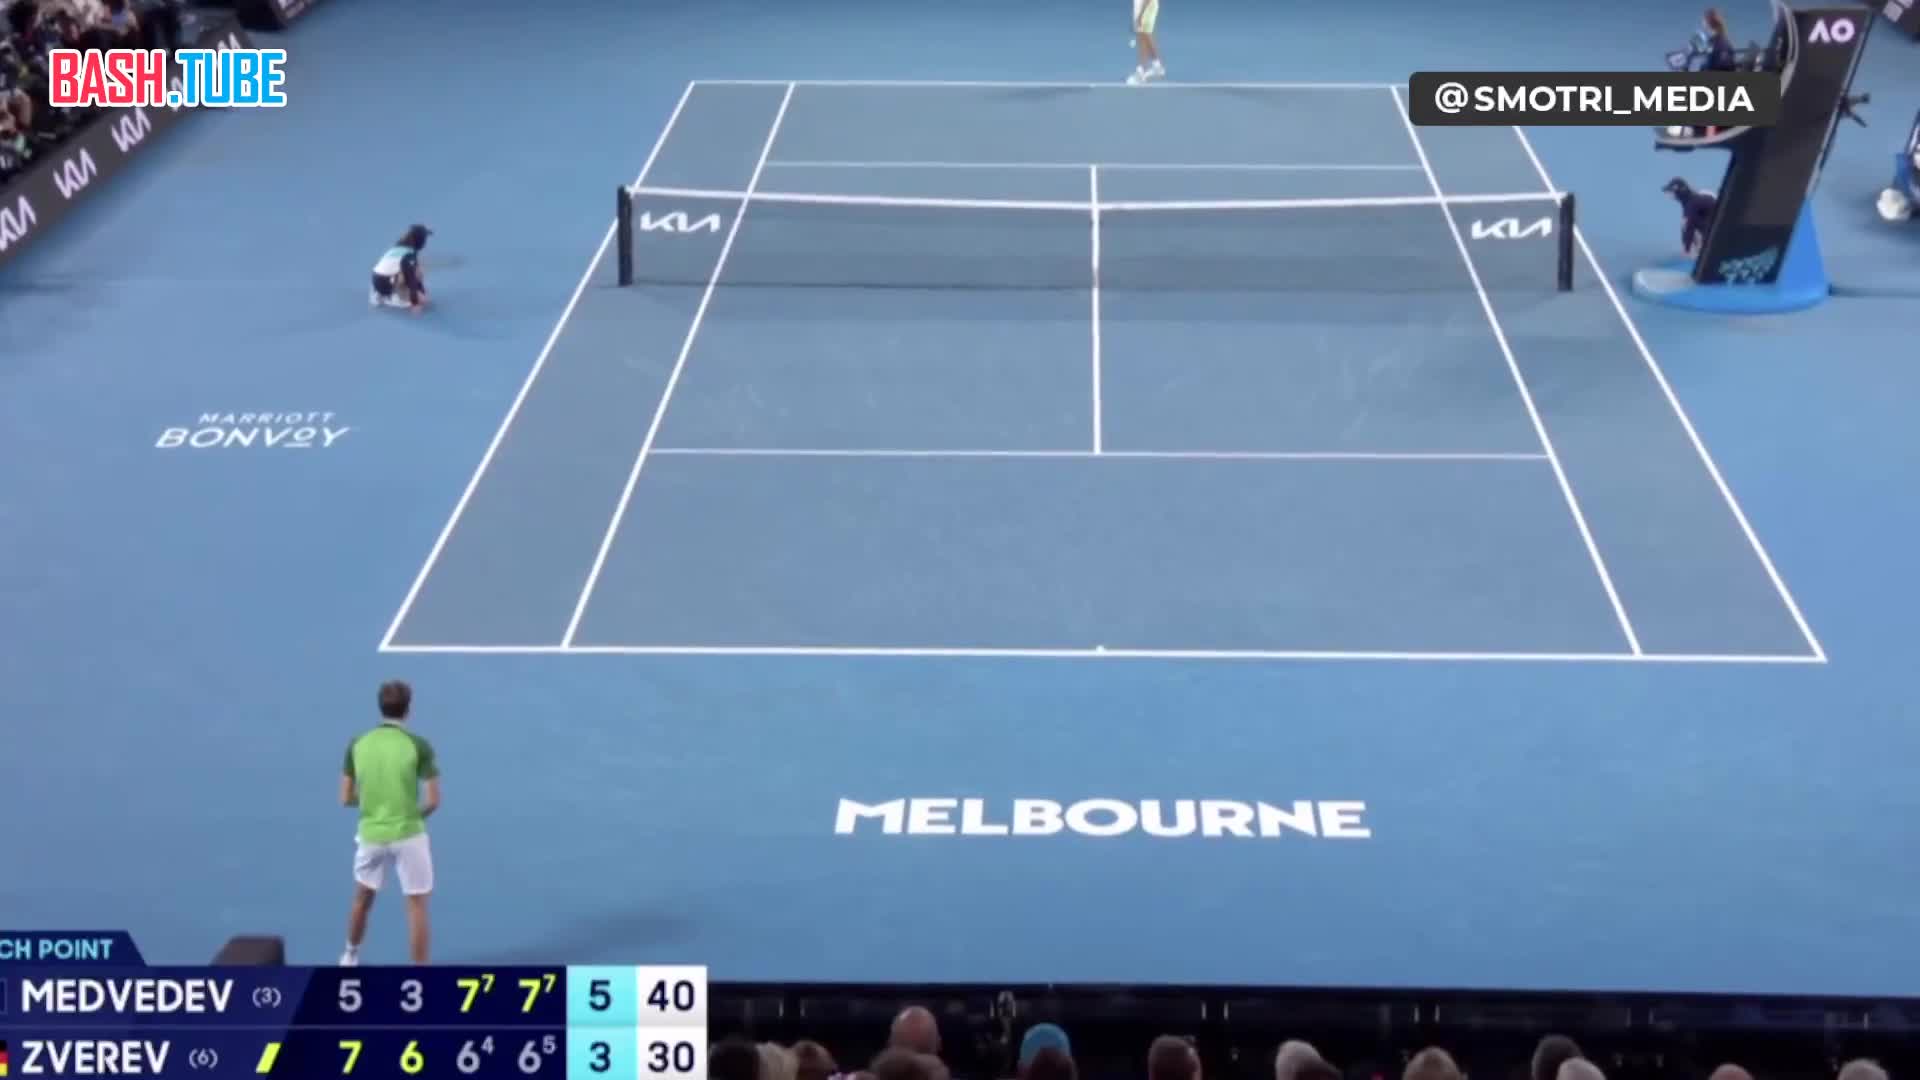  Российский теннисист Медведев в 3 раз вышел в финал Australian open благодаря победе над Александром Зверевым из Германии